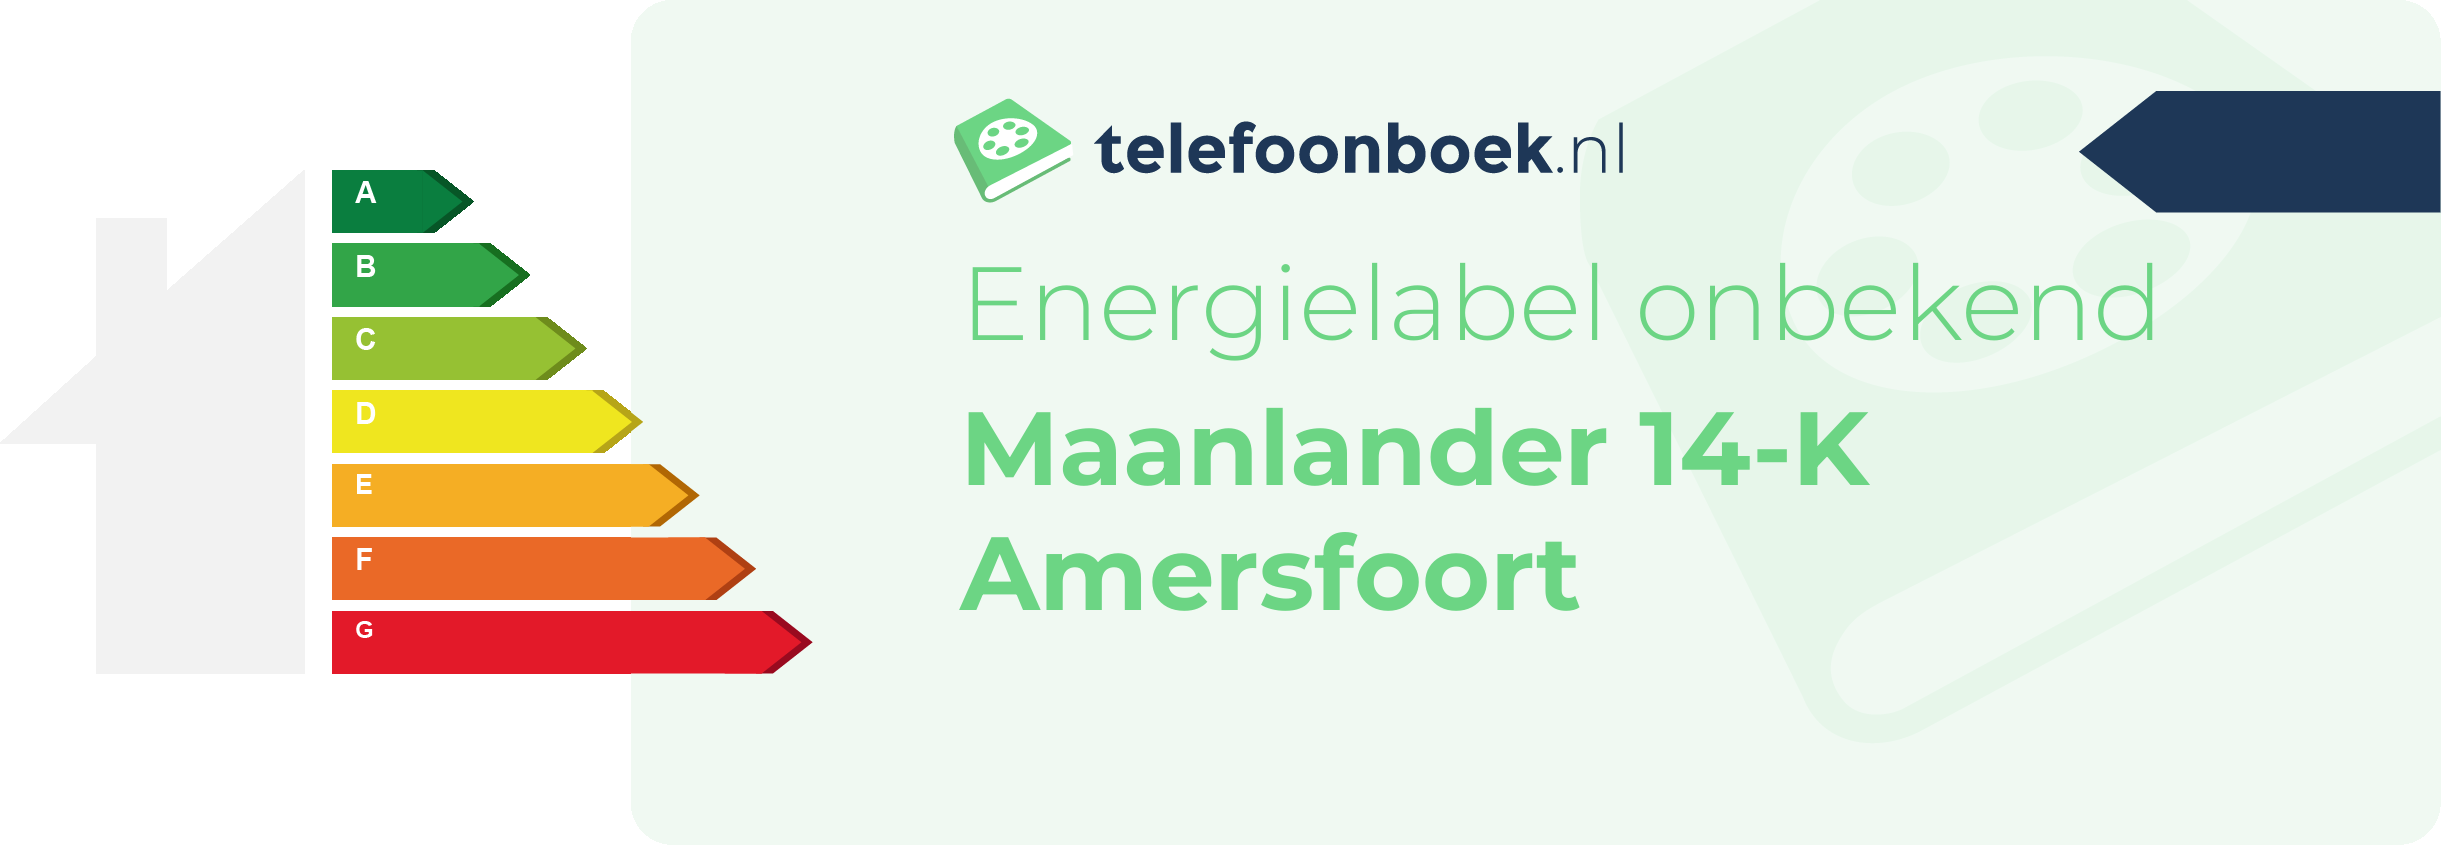 Energielabel Maanlander 14-K Amersfoort